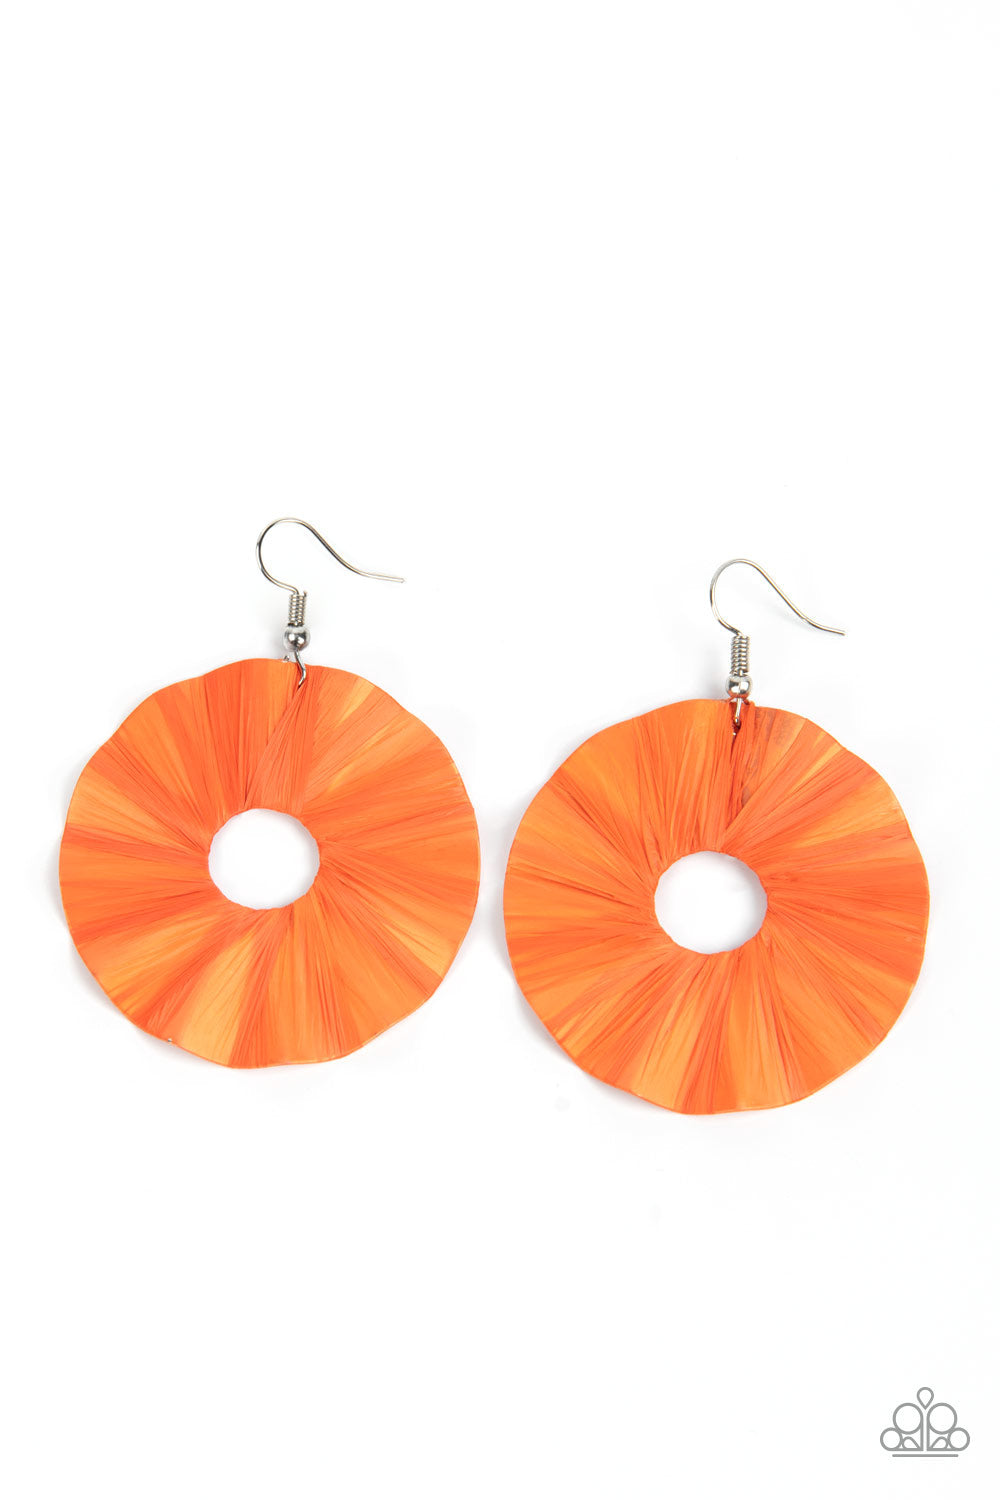 Fan the Breeze - Orange Earrings -Paparazzi Accessories